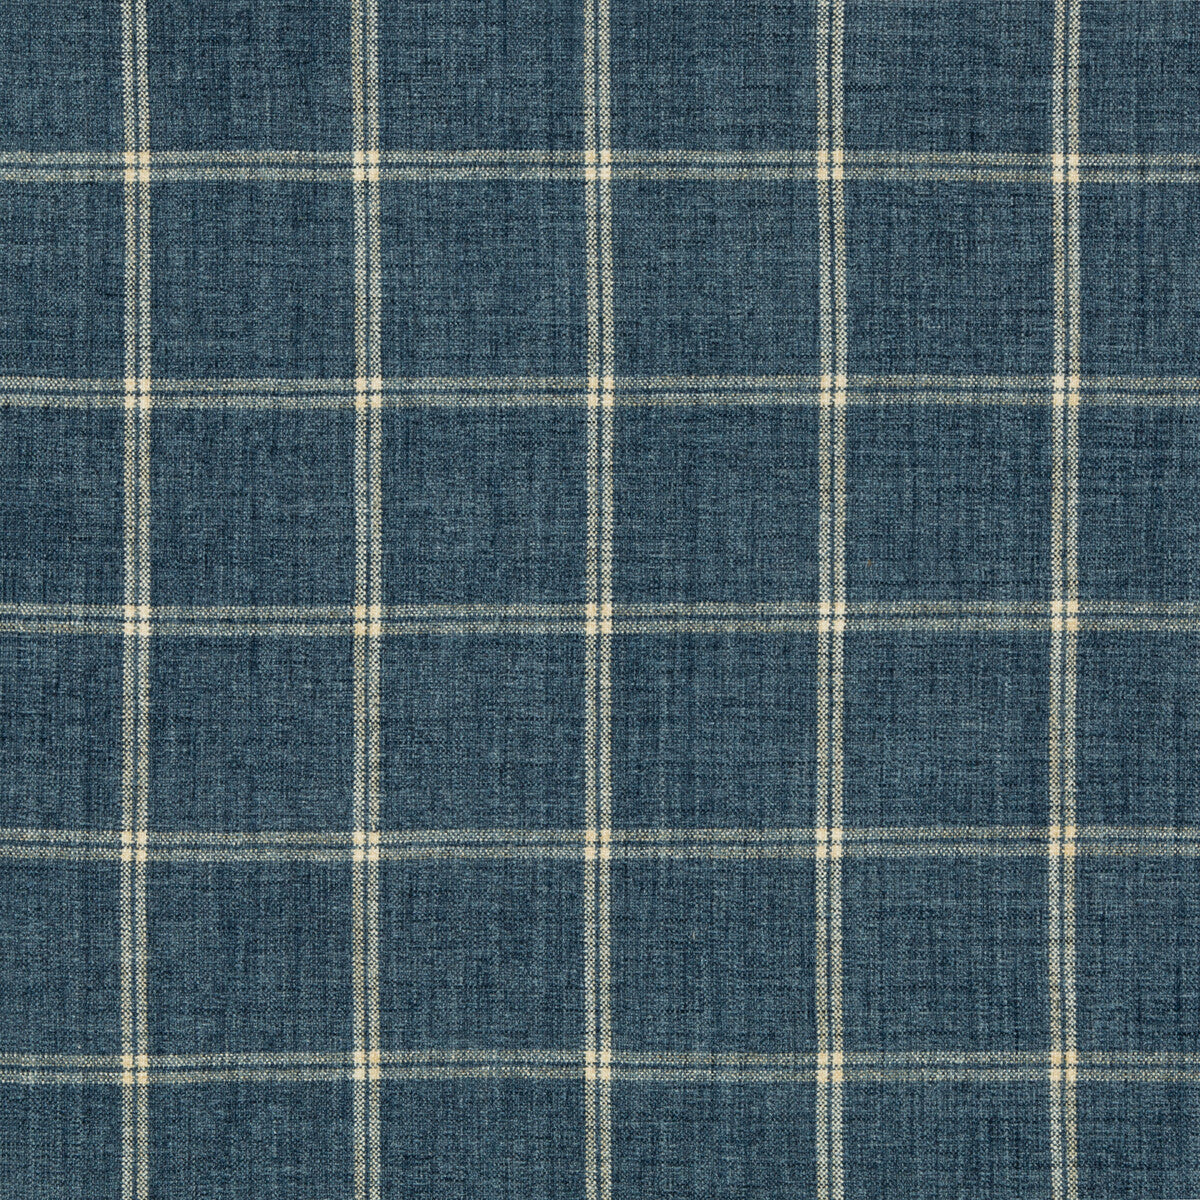 Kravet Basics fabric in 35774-5 color - pattern 35774.5.0 - by Kravet Basics